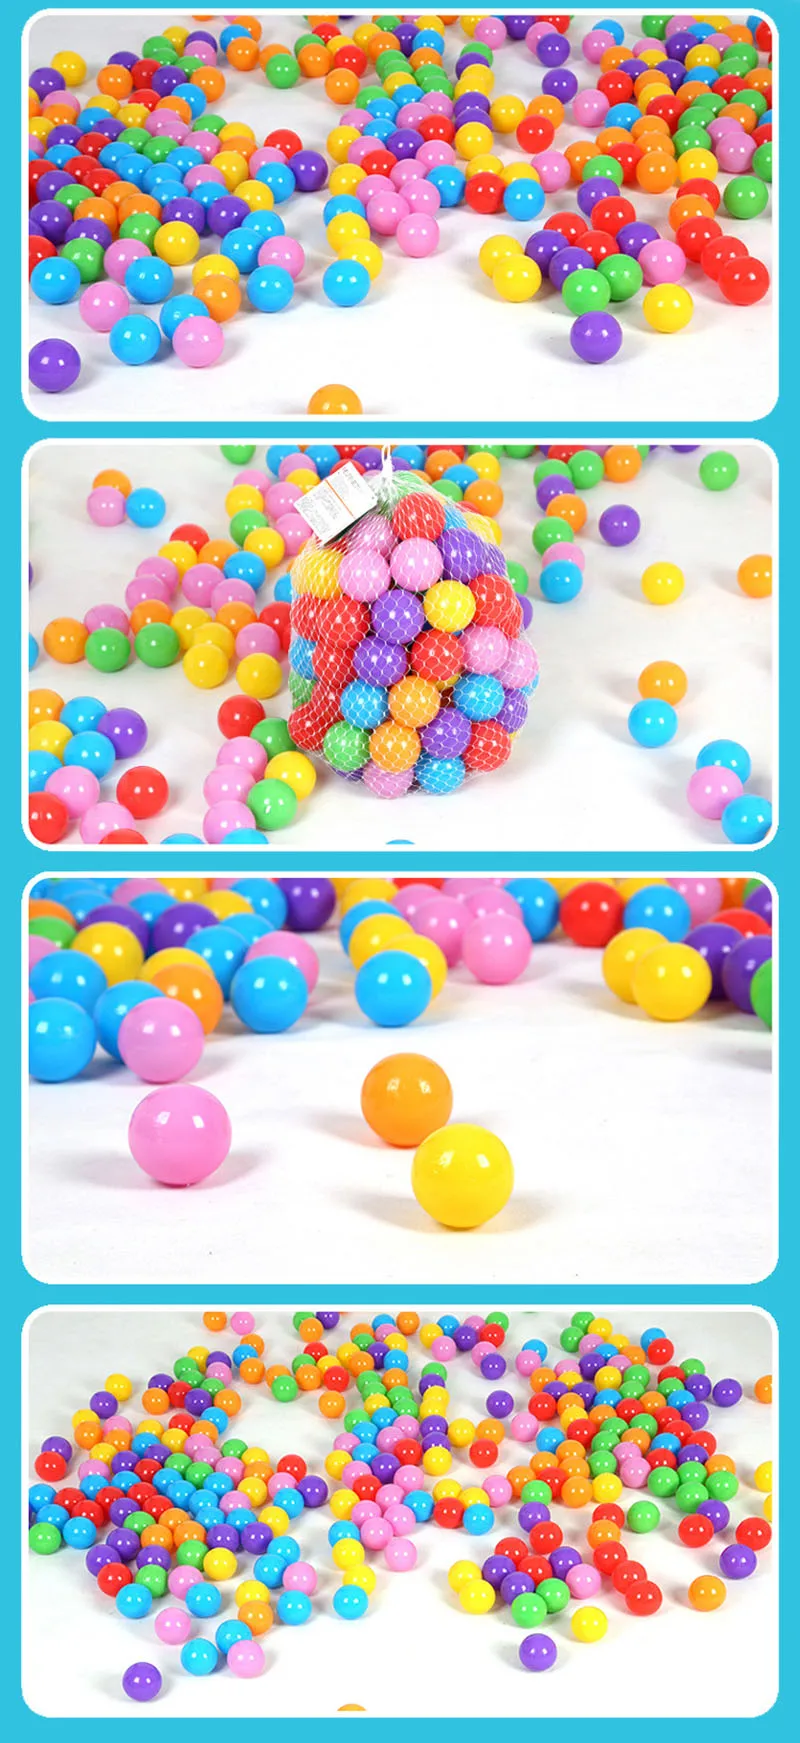 7 см океанские Пляжные Мячи 50 шт/100 шт./лот экологически чистые красочные мягкие пластиковые водные Бассейн океанские волнистые шарики детские забавные игрушки для игры